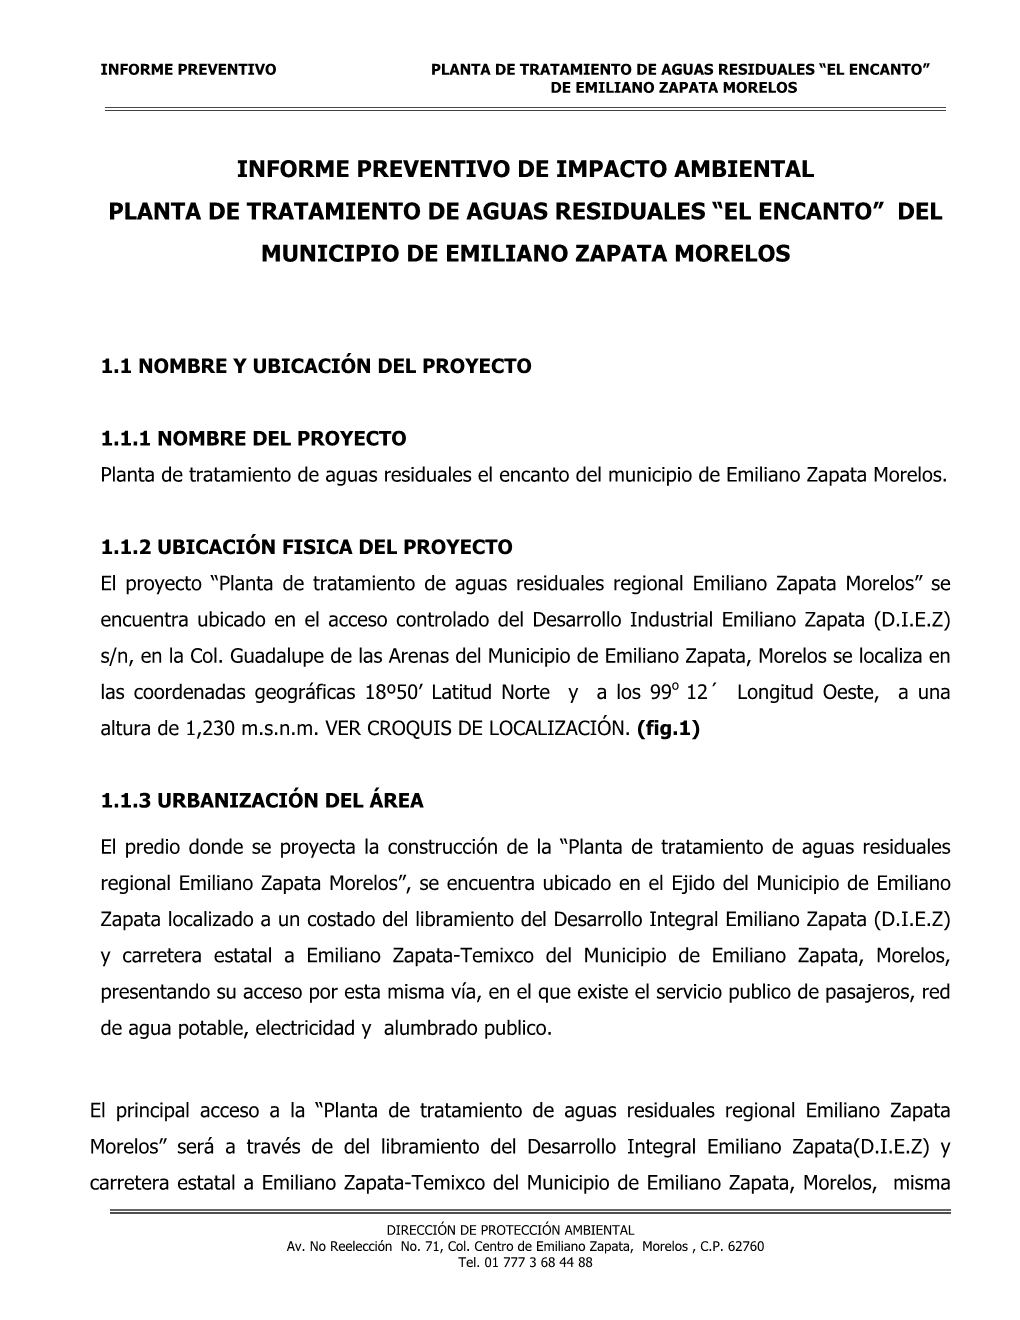 Informe Preventivo De Impacto Ambiental Planta De Tratamiento De Aguas Residuales “El Encanto” Del Municipio De Emiliano Zapata Morelos